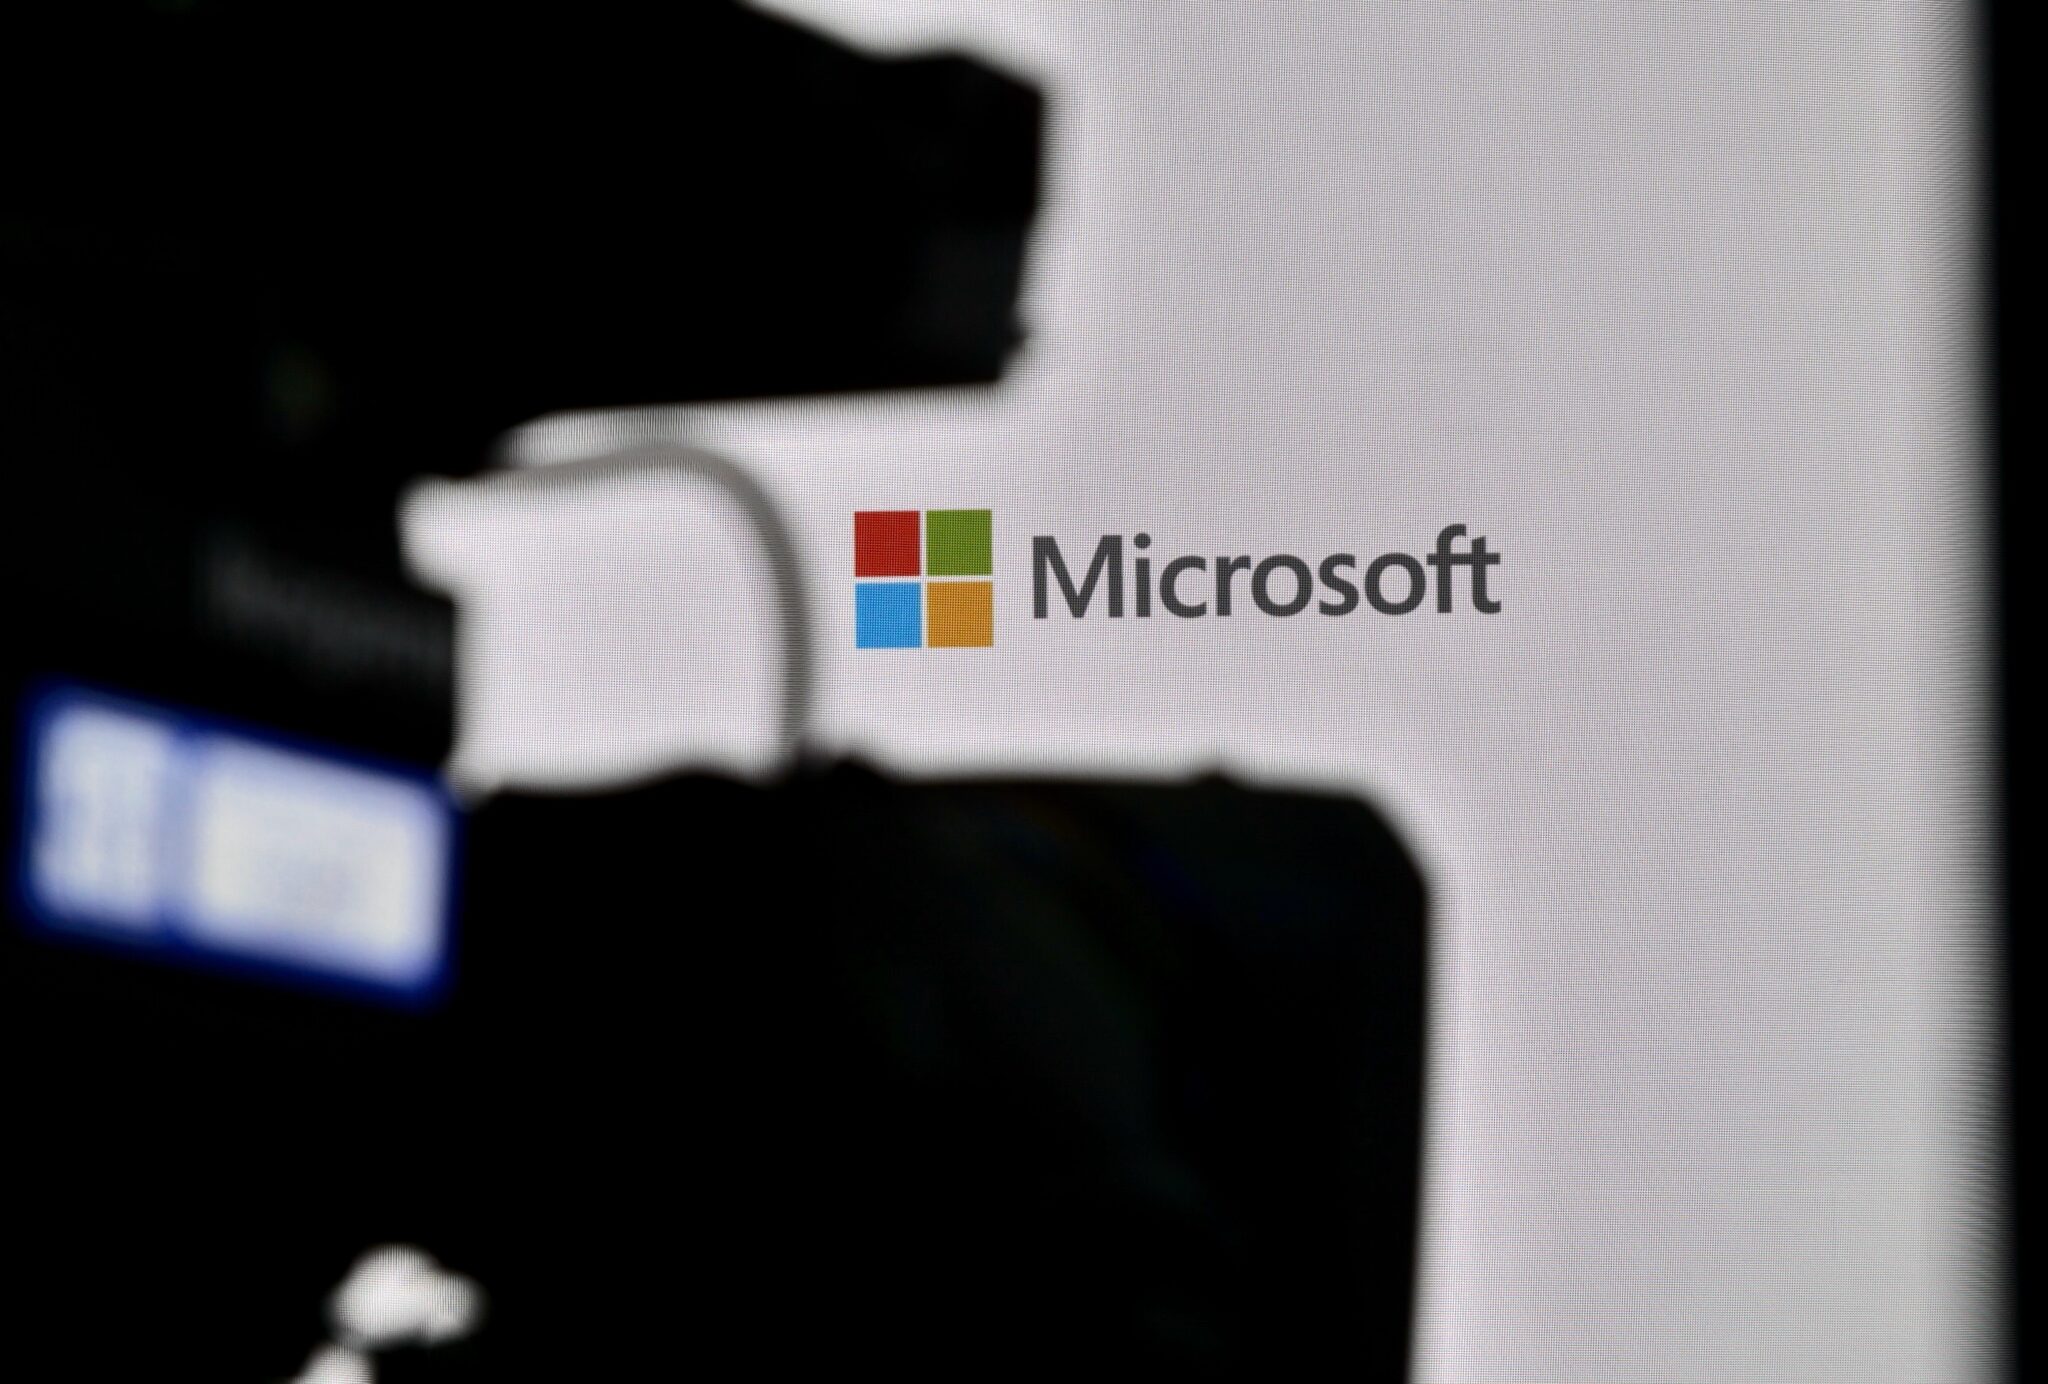 Microsoft intentó silenciar la vulnerabilidad de DALL-E, según un responsable de la empresa